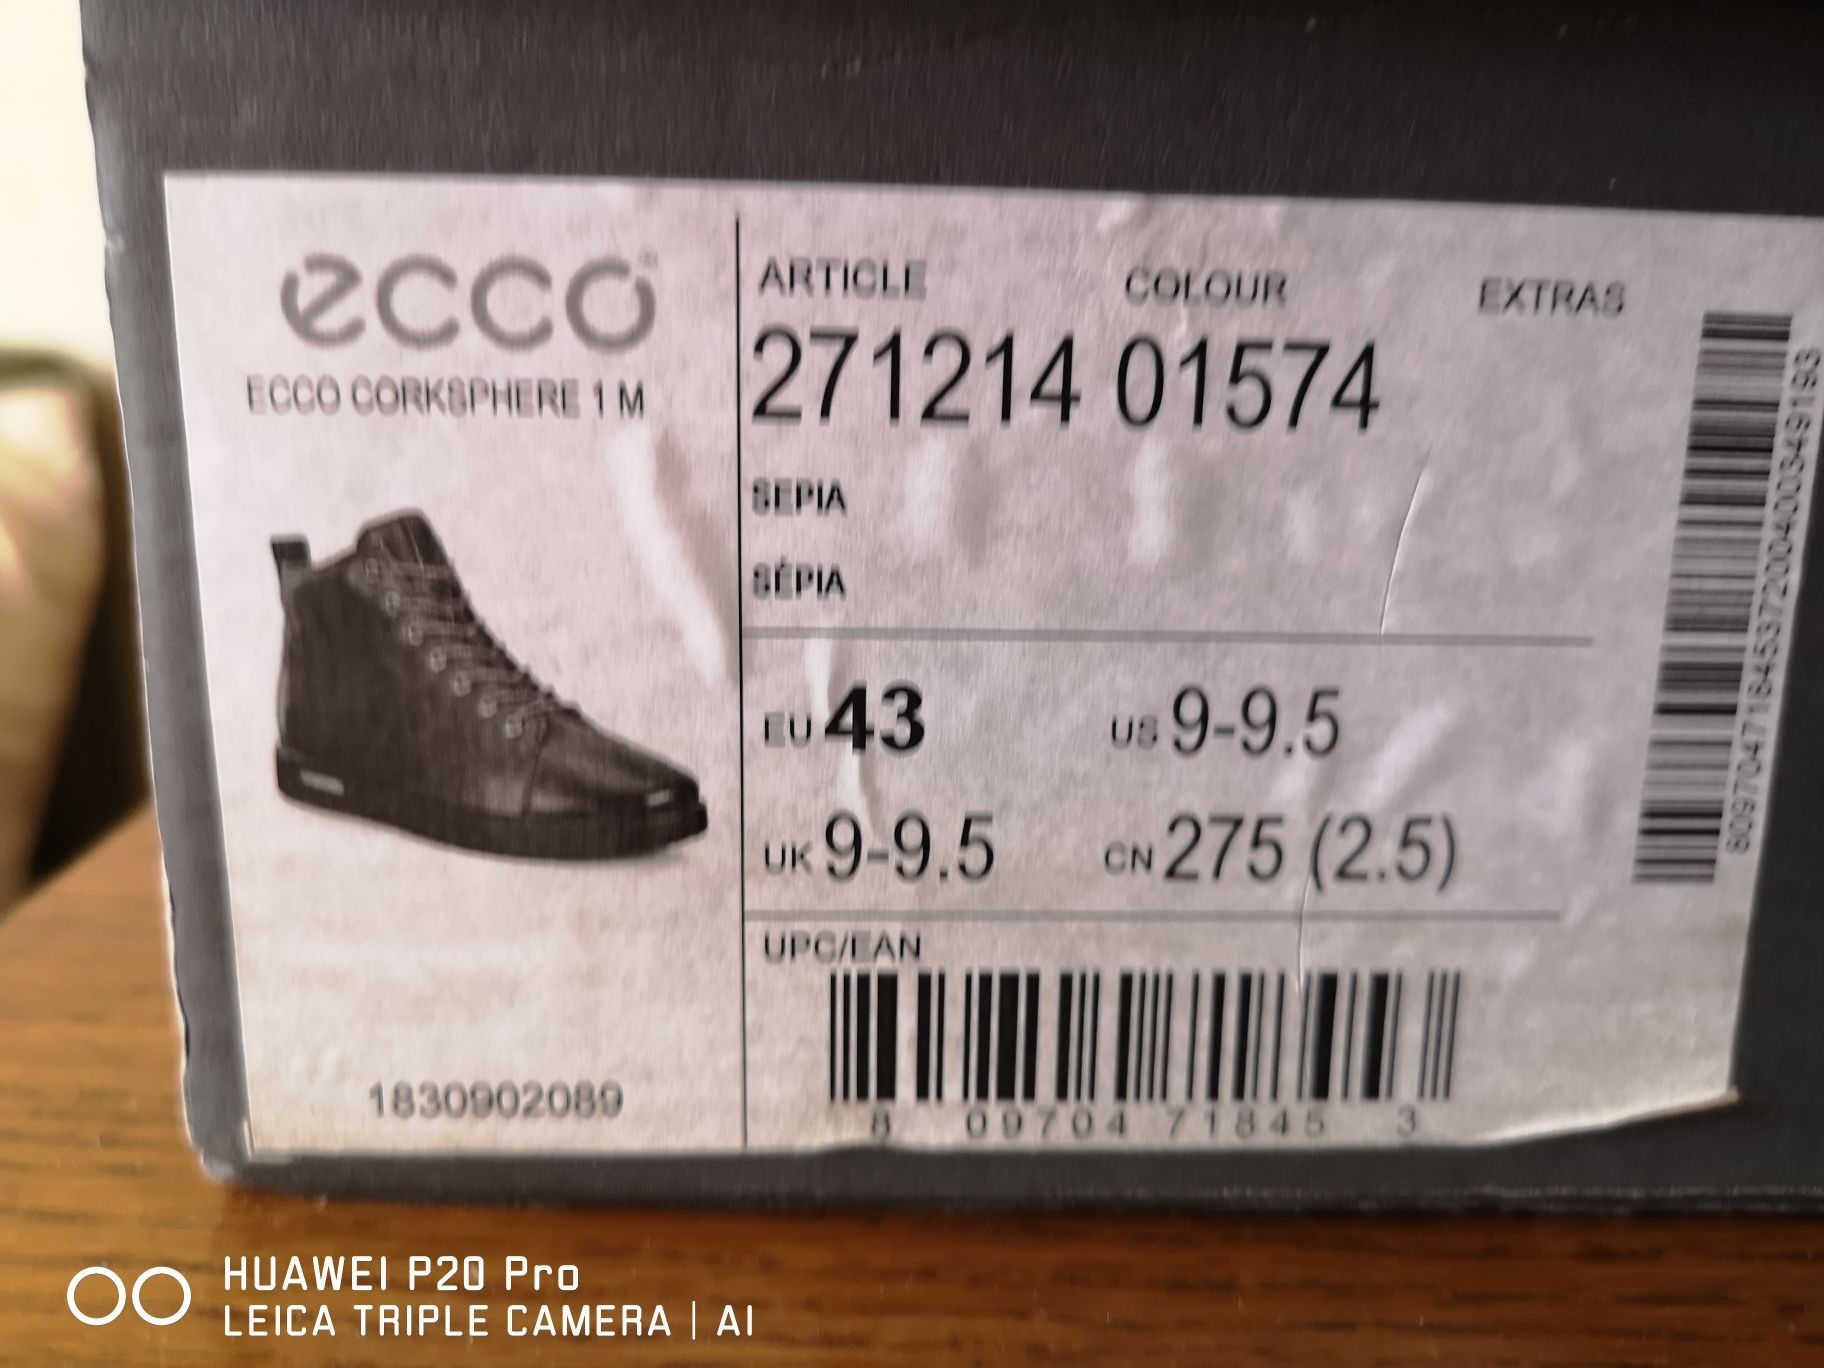 Продам фирменные ботинки ECCO CORKSPHERE 1M, оригинал.